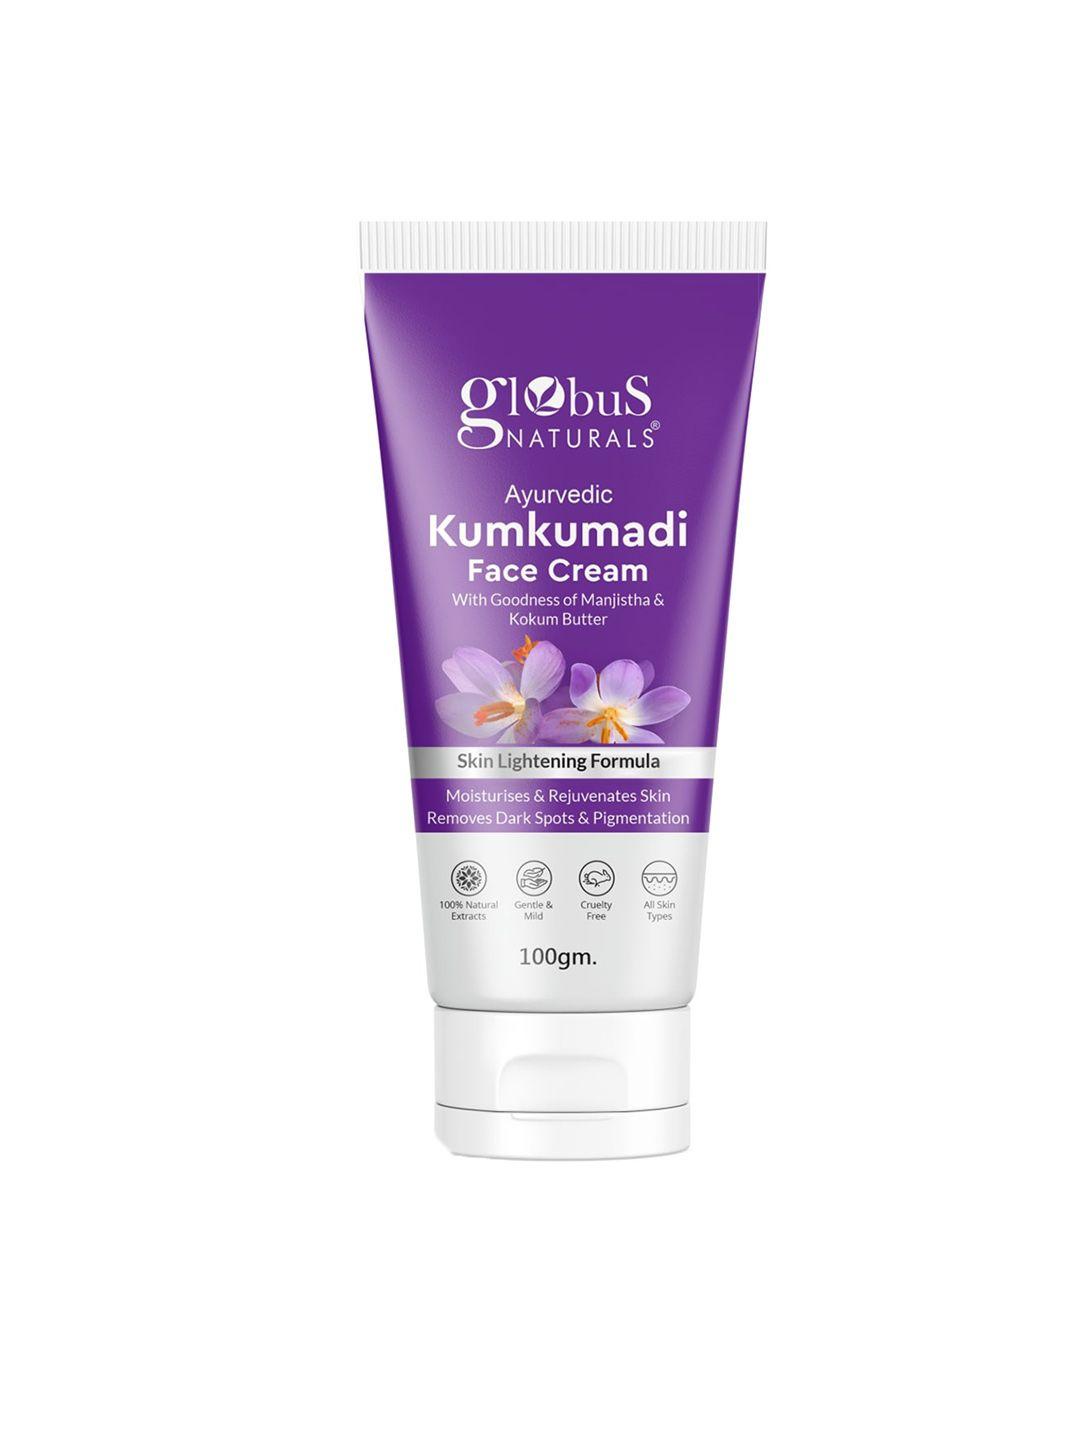 globus naturals kumkumadi skin lightening face cream with manjistha & kokum butter - 100gm